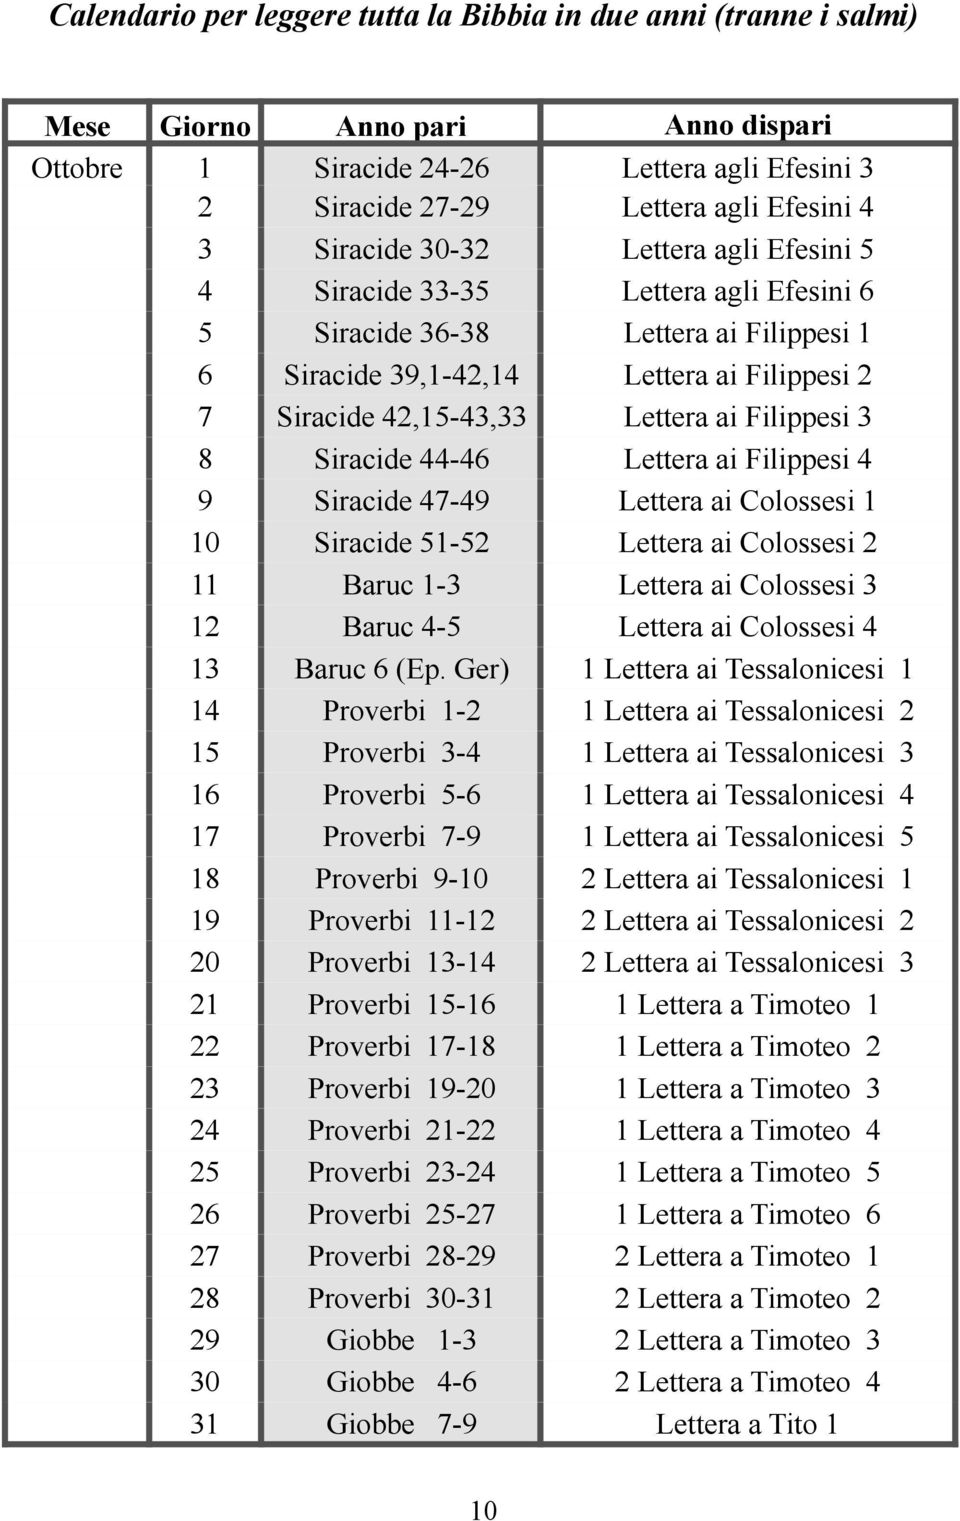 51-52 Lettera ai Colossesi 2 11 Baruc 1-3 Lettera ai Colossesi 3 12 Baruc 4-5 Lettera ai Colossesi 4 13 Baruc 6 (Ep.